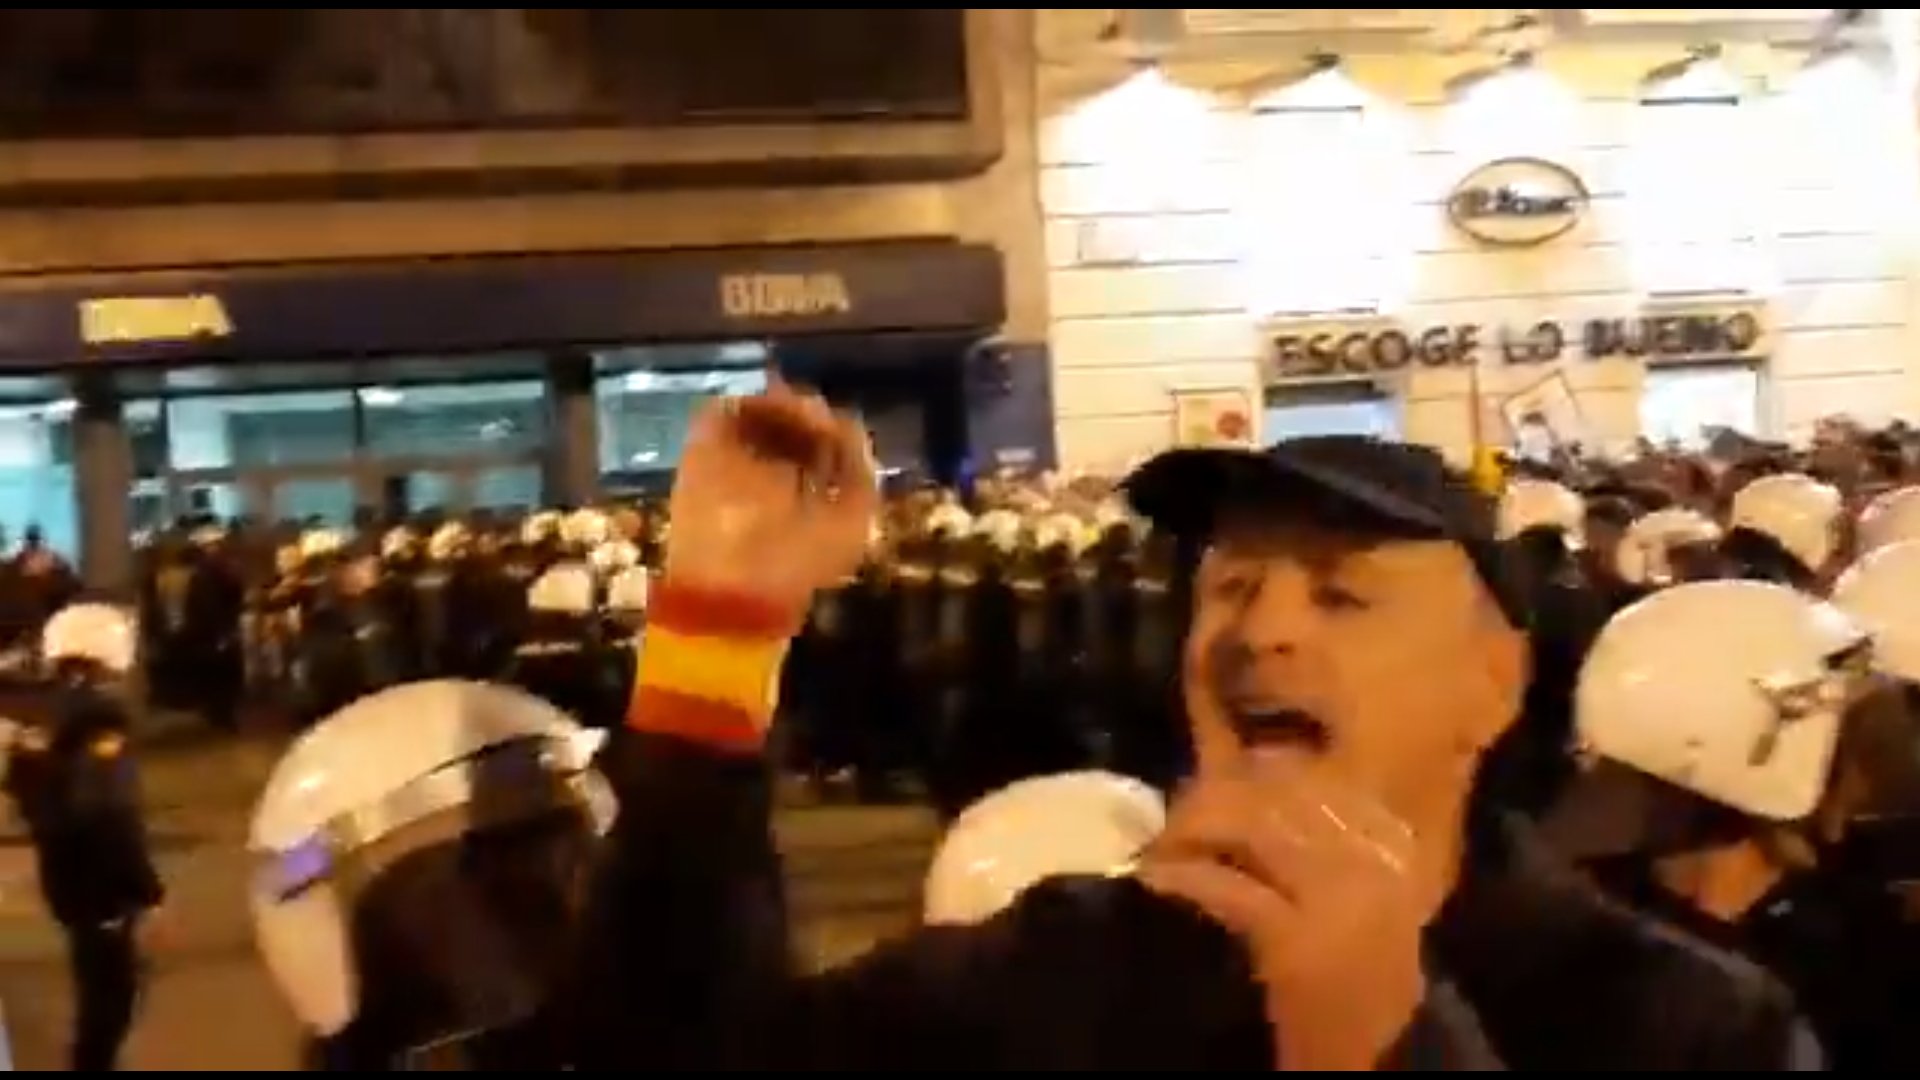 Ultras amenazan con linchar manifestantes procatalanes en Zaragoza: "los mataríamos"